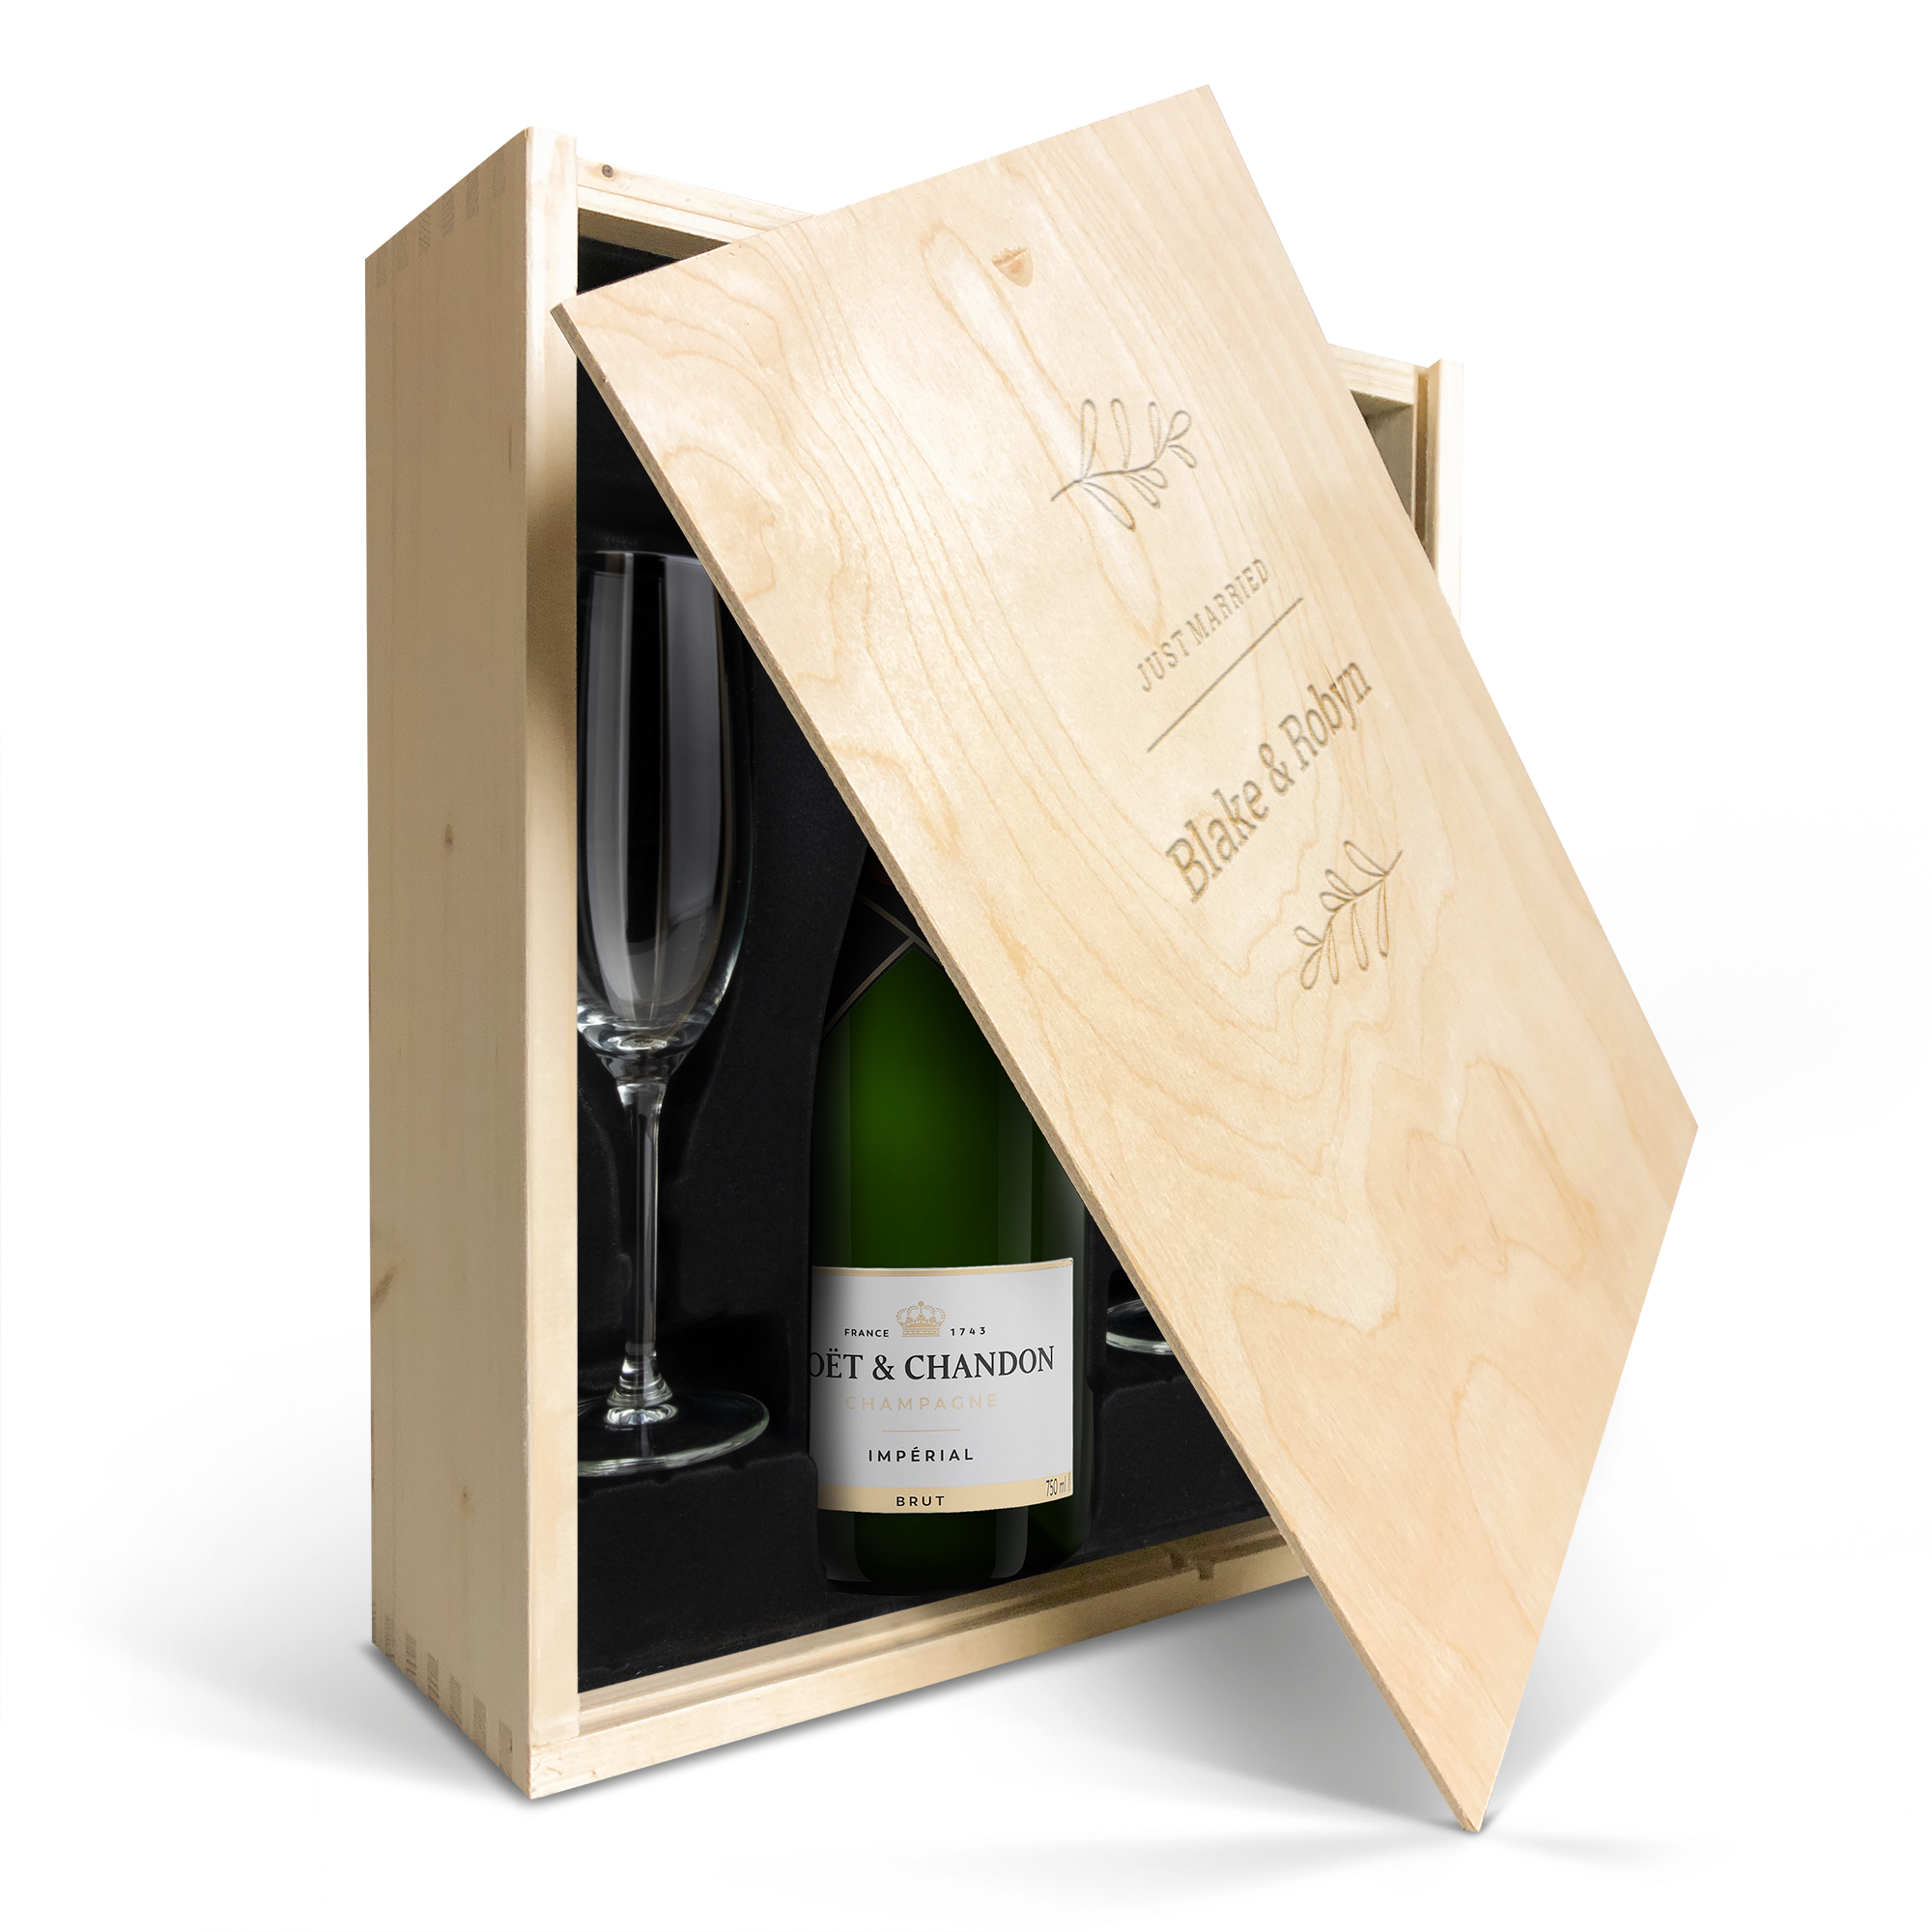 Set cadou personalizat pentru șampanie - Moët et Chandon